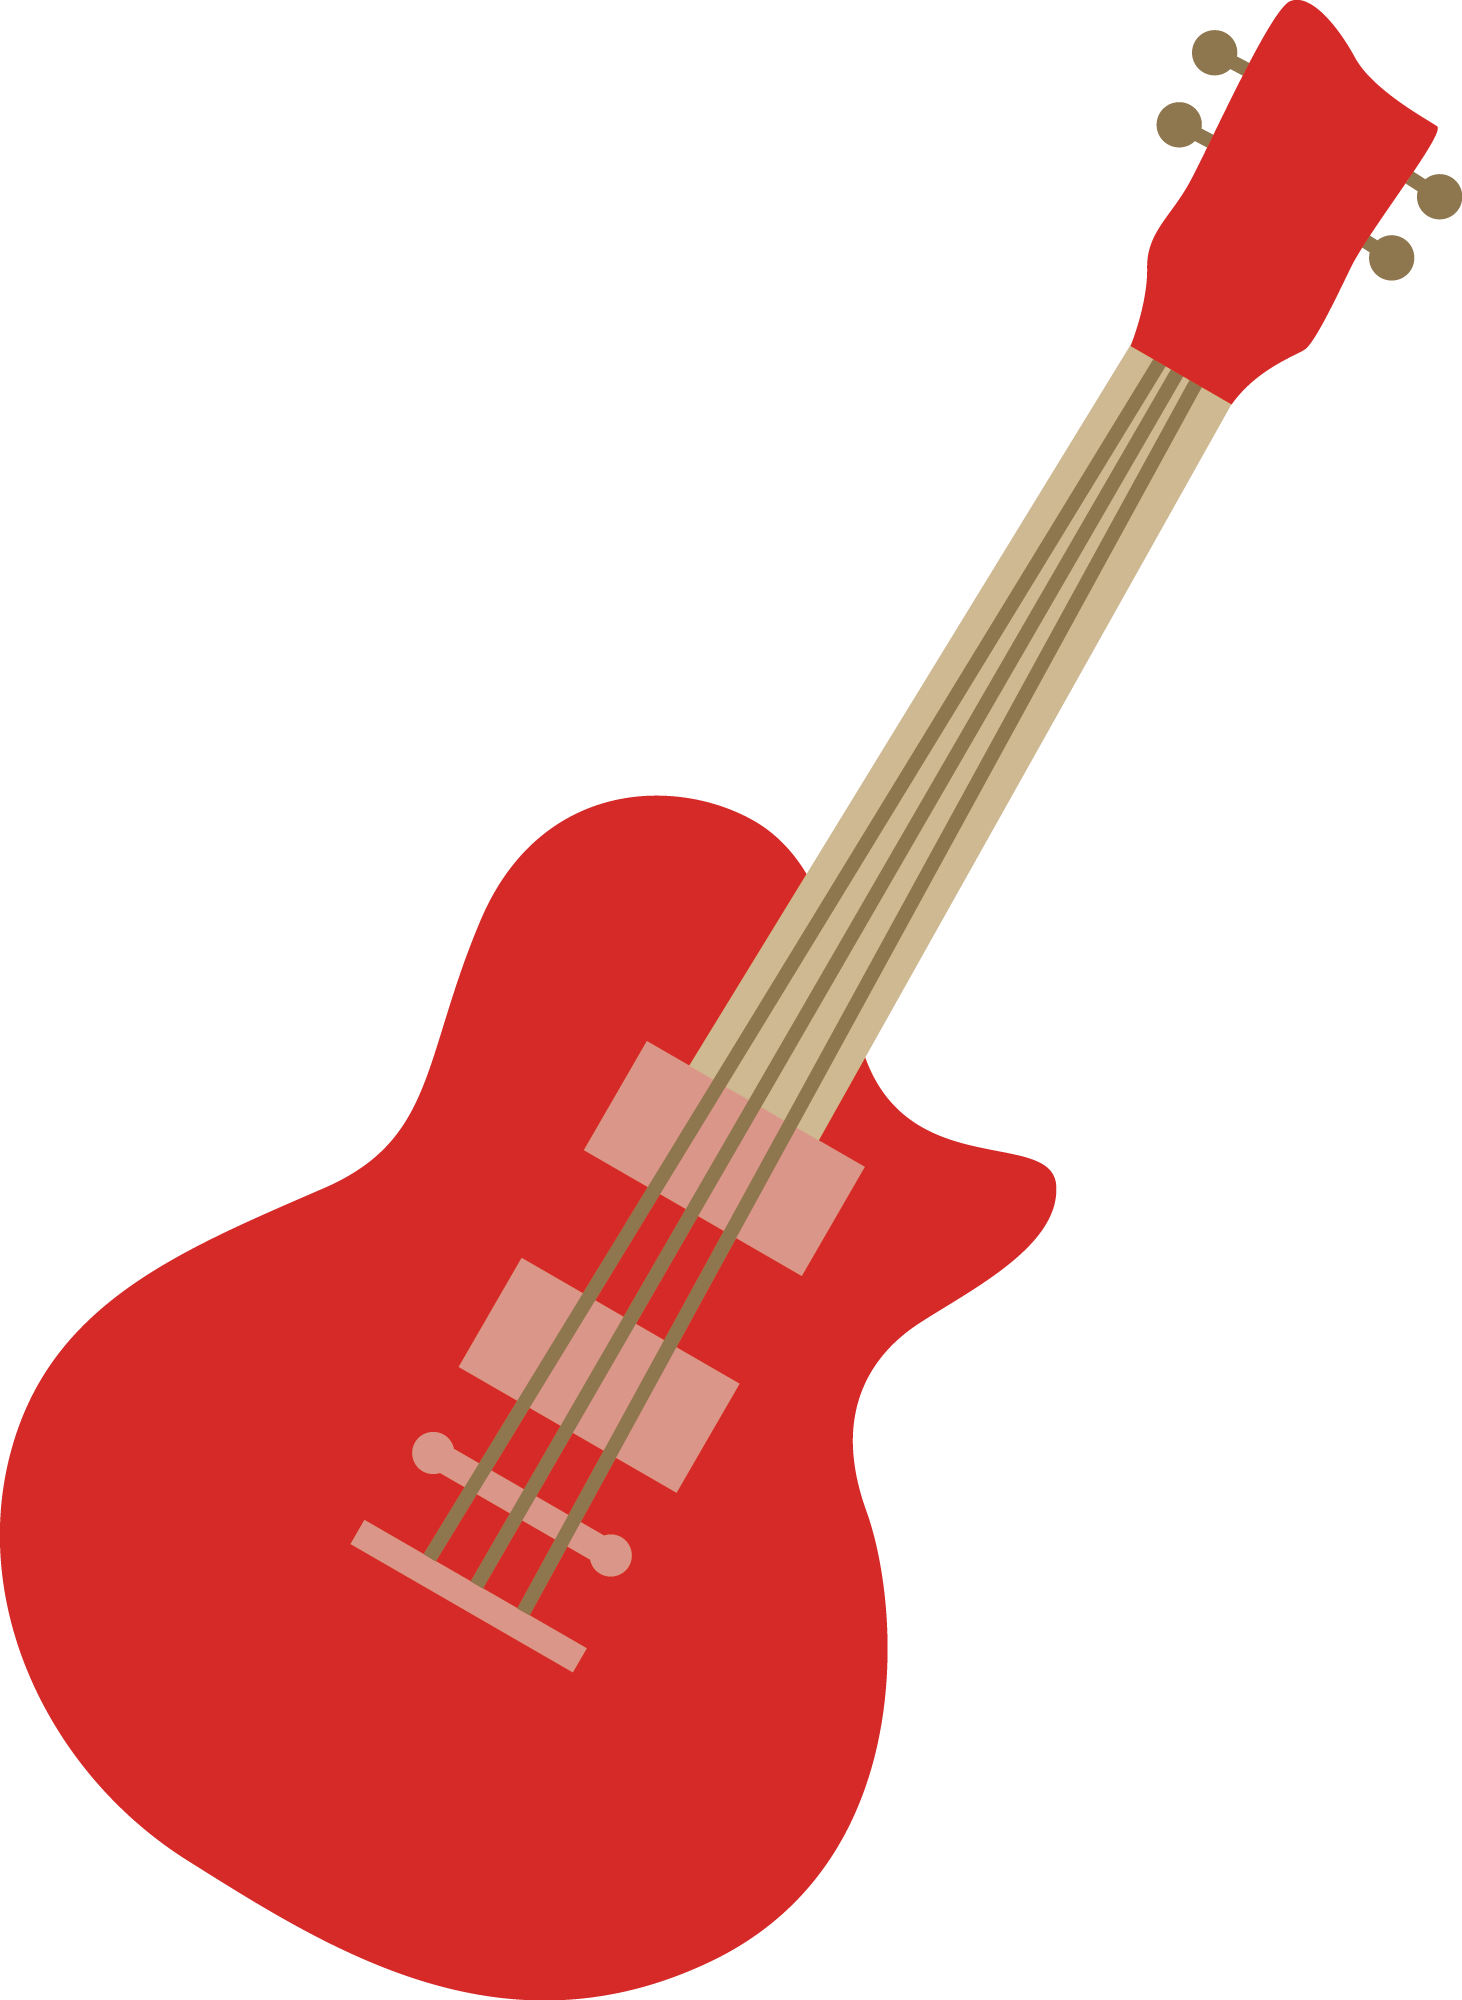 Красная электрическая гитара вектор PNG Image